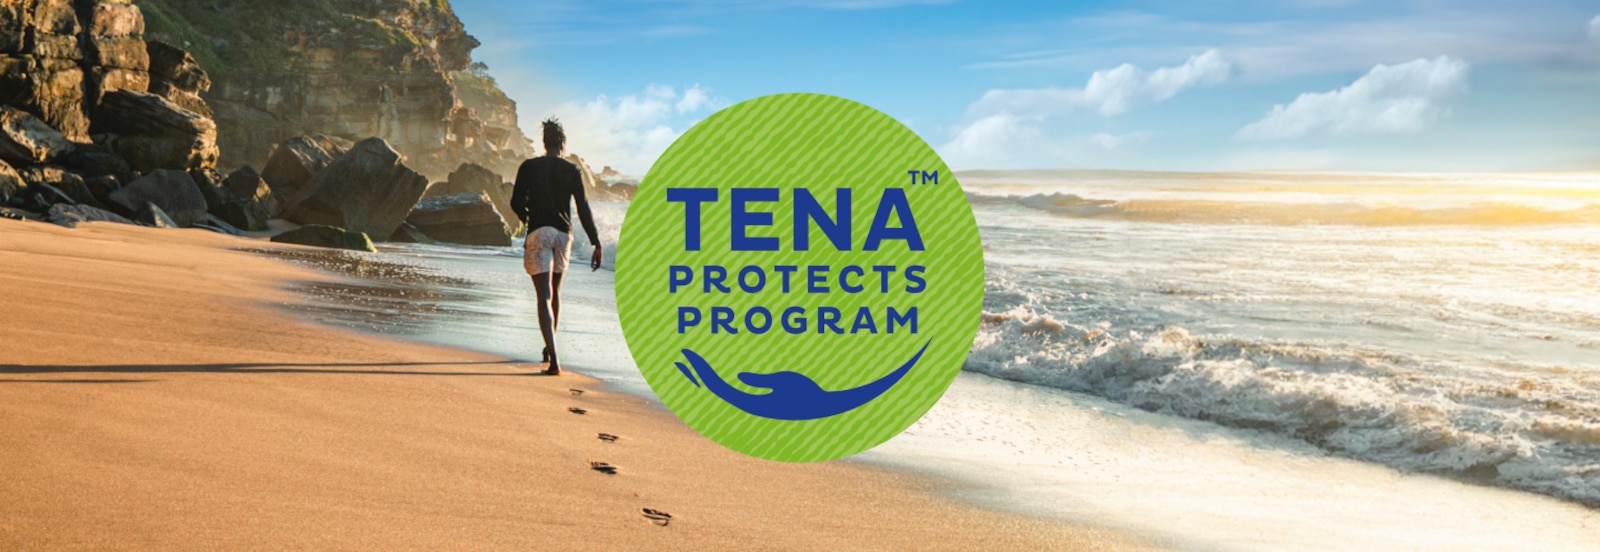 TENA Protects Program logoet lagt over et foto af en mand, der går langs en solrig strand mod klipper i horisonten 